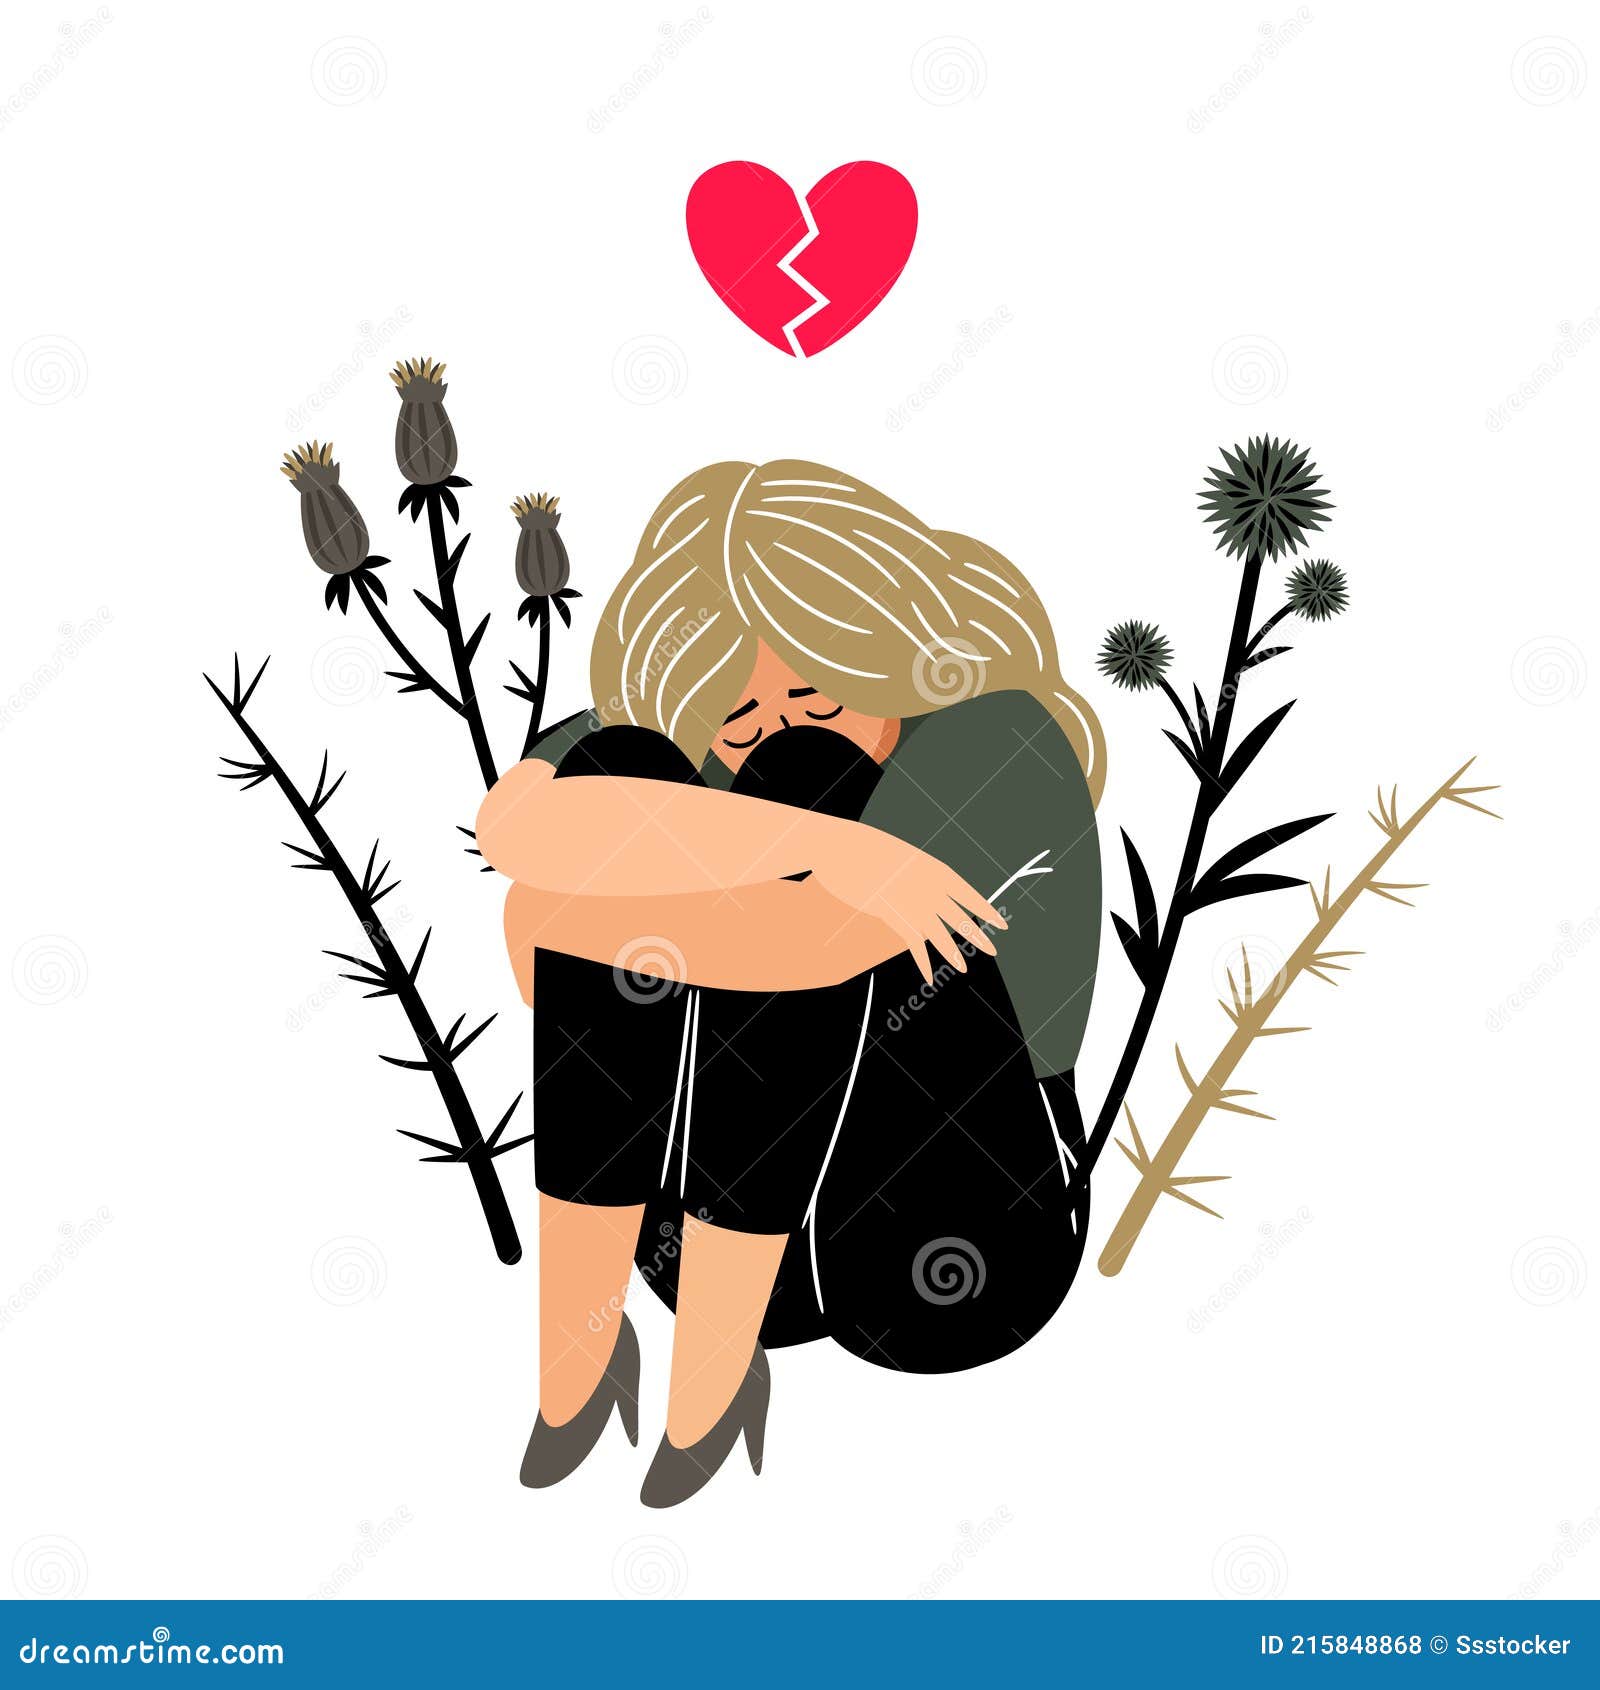 Cartoon alone girl holds broken heart white Vector Image